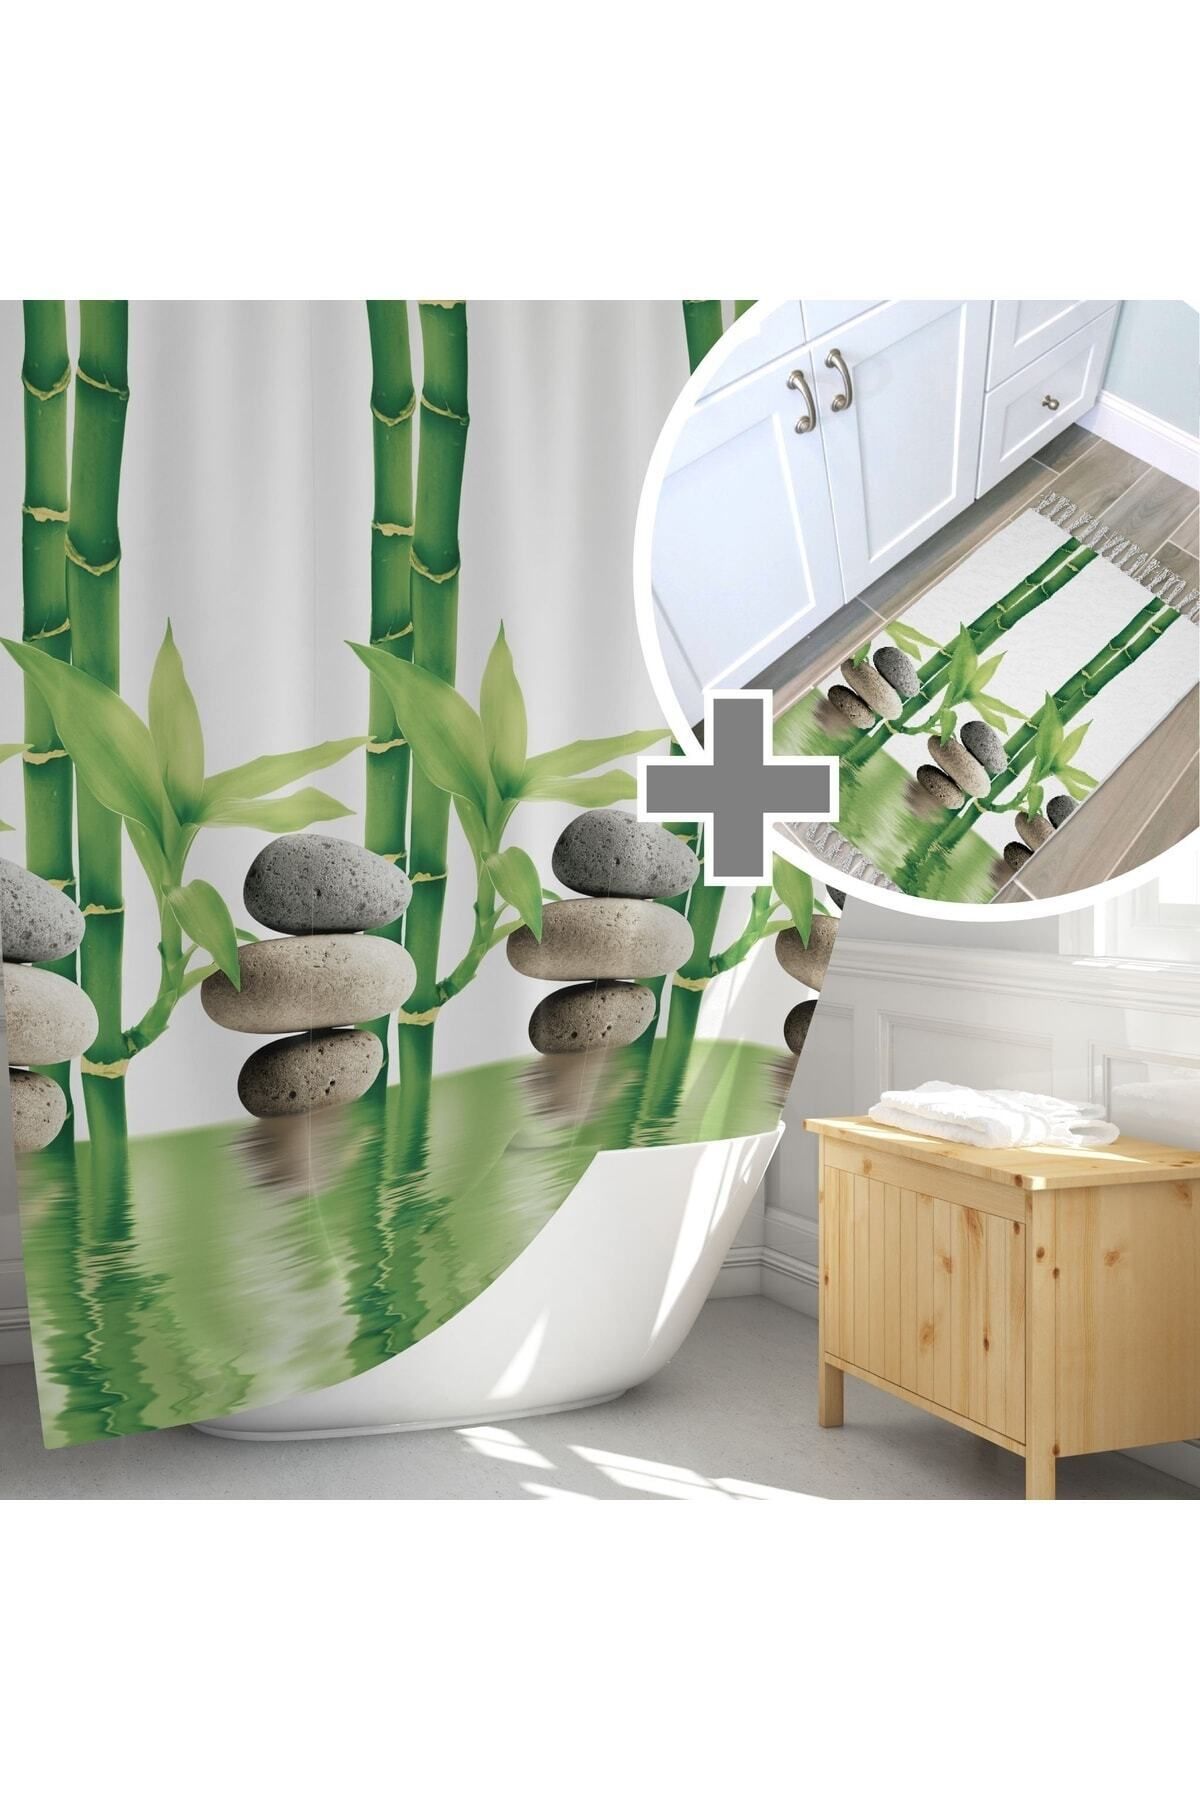 Tropikhome Yeşil Banyo Perdesi Ve Banyo Paspası Takımı, Tek Kanat Duş Perdesi Seti, Bamboo Banyo Perdesi Takımı